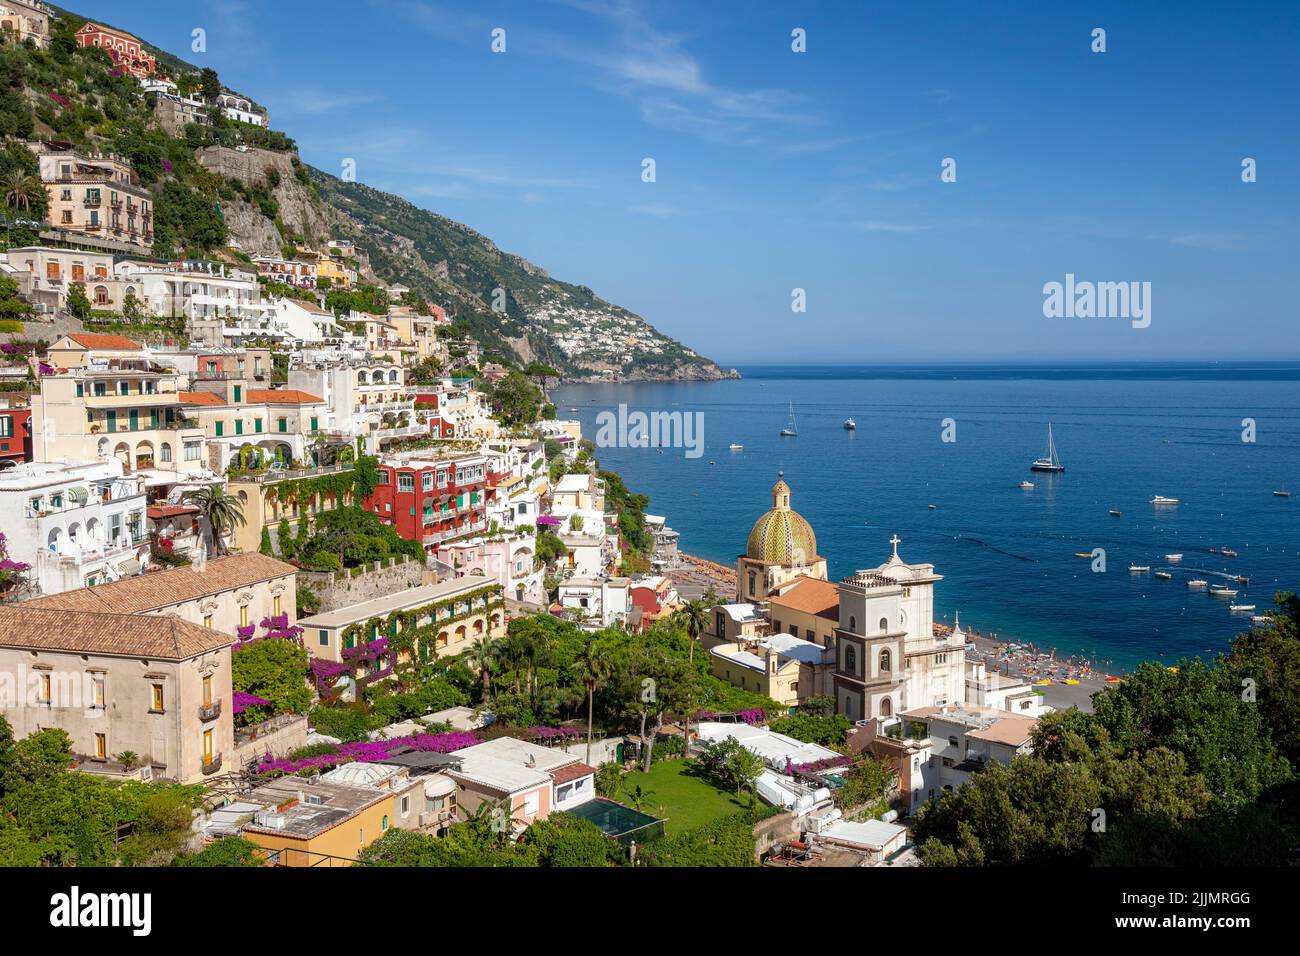 Vista a lo largo de la costa de Amalfi del pueblo en la ladera de Positano, Campania Italia Foto de stock